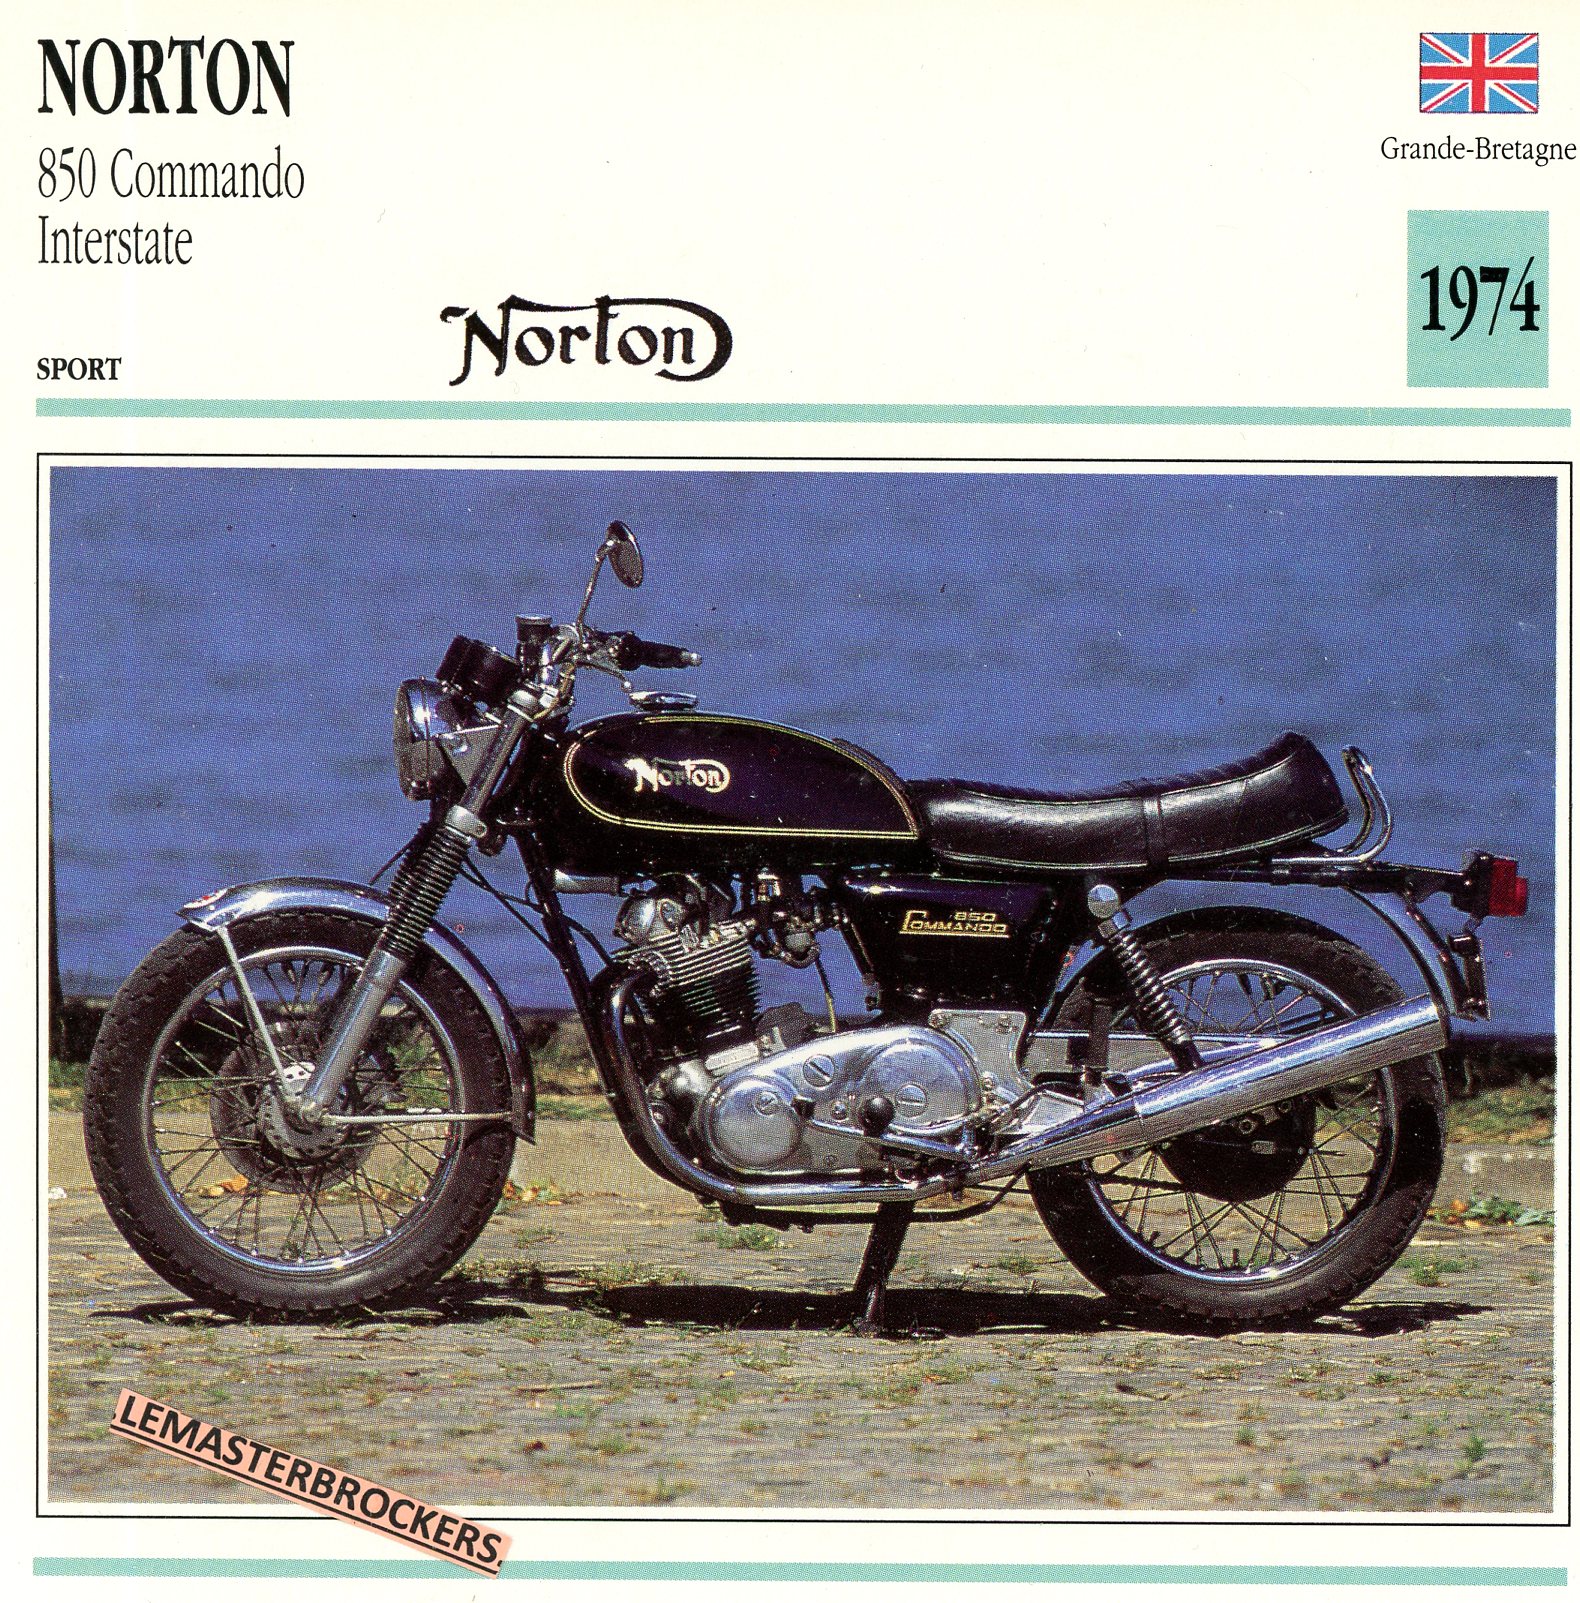 NORTON 850 COMMANDO INTERSTATE 1974 - FICHE MOTO COLLECTION ATLAS